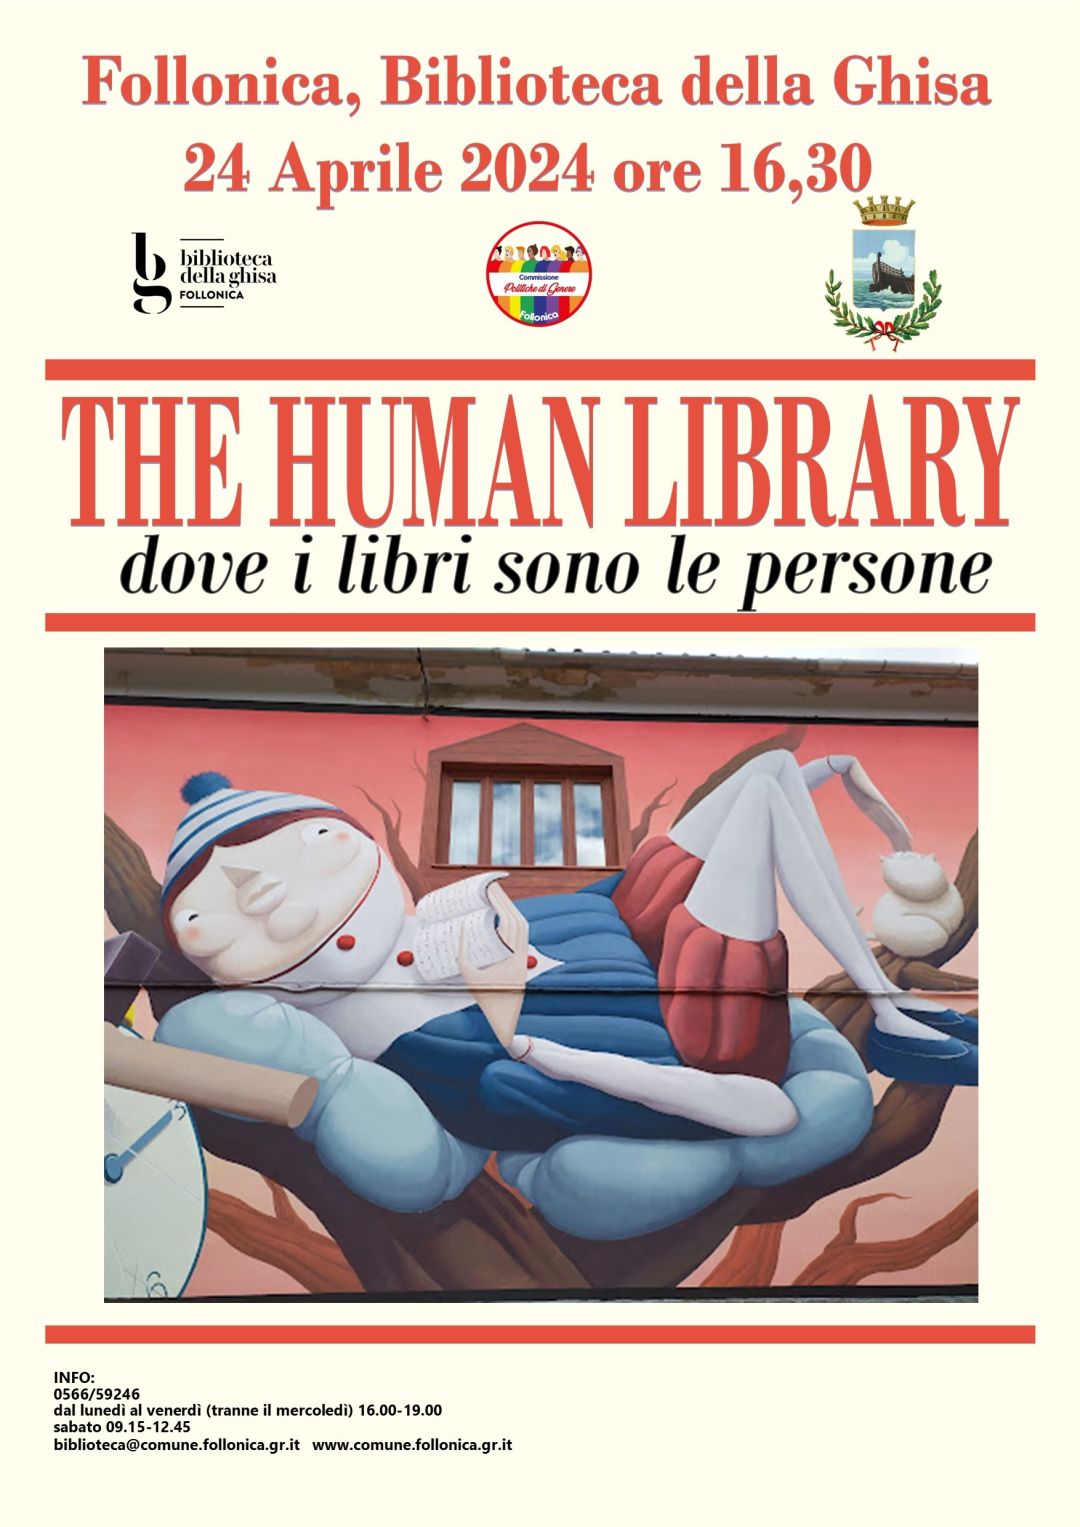 Human Library - Mercoledì 24 Aprile dalle 16,30 alla Biblioteca della Ghisa